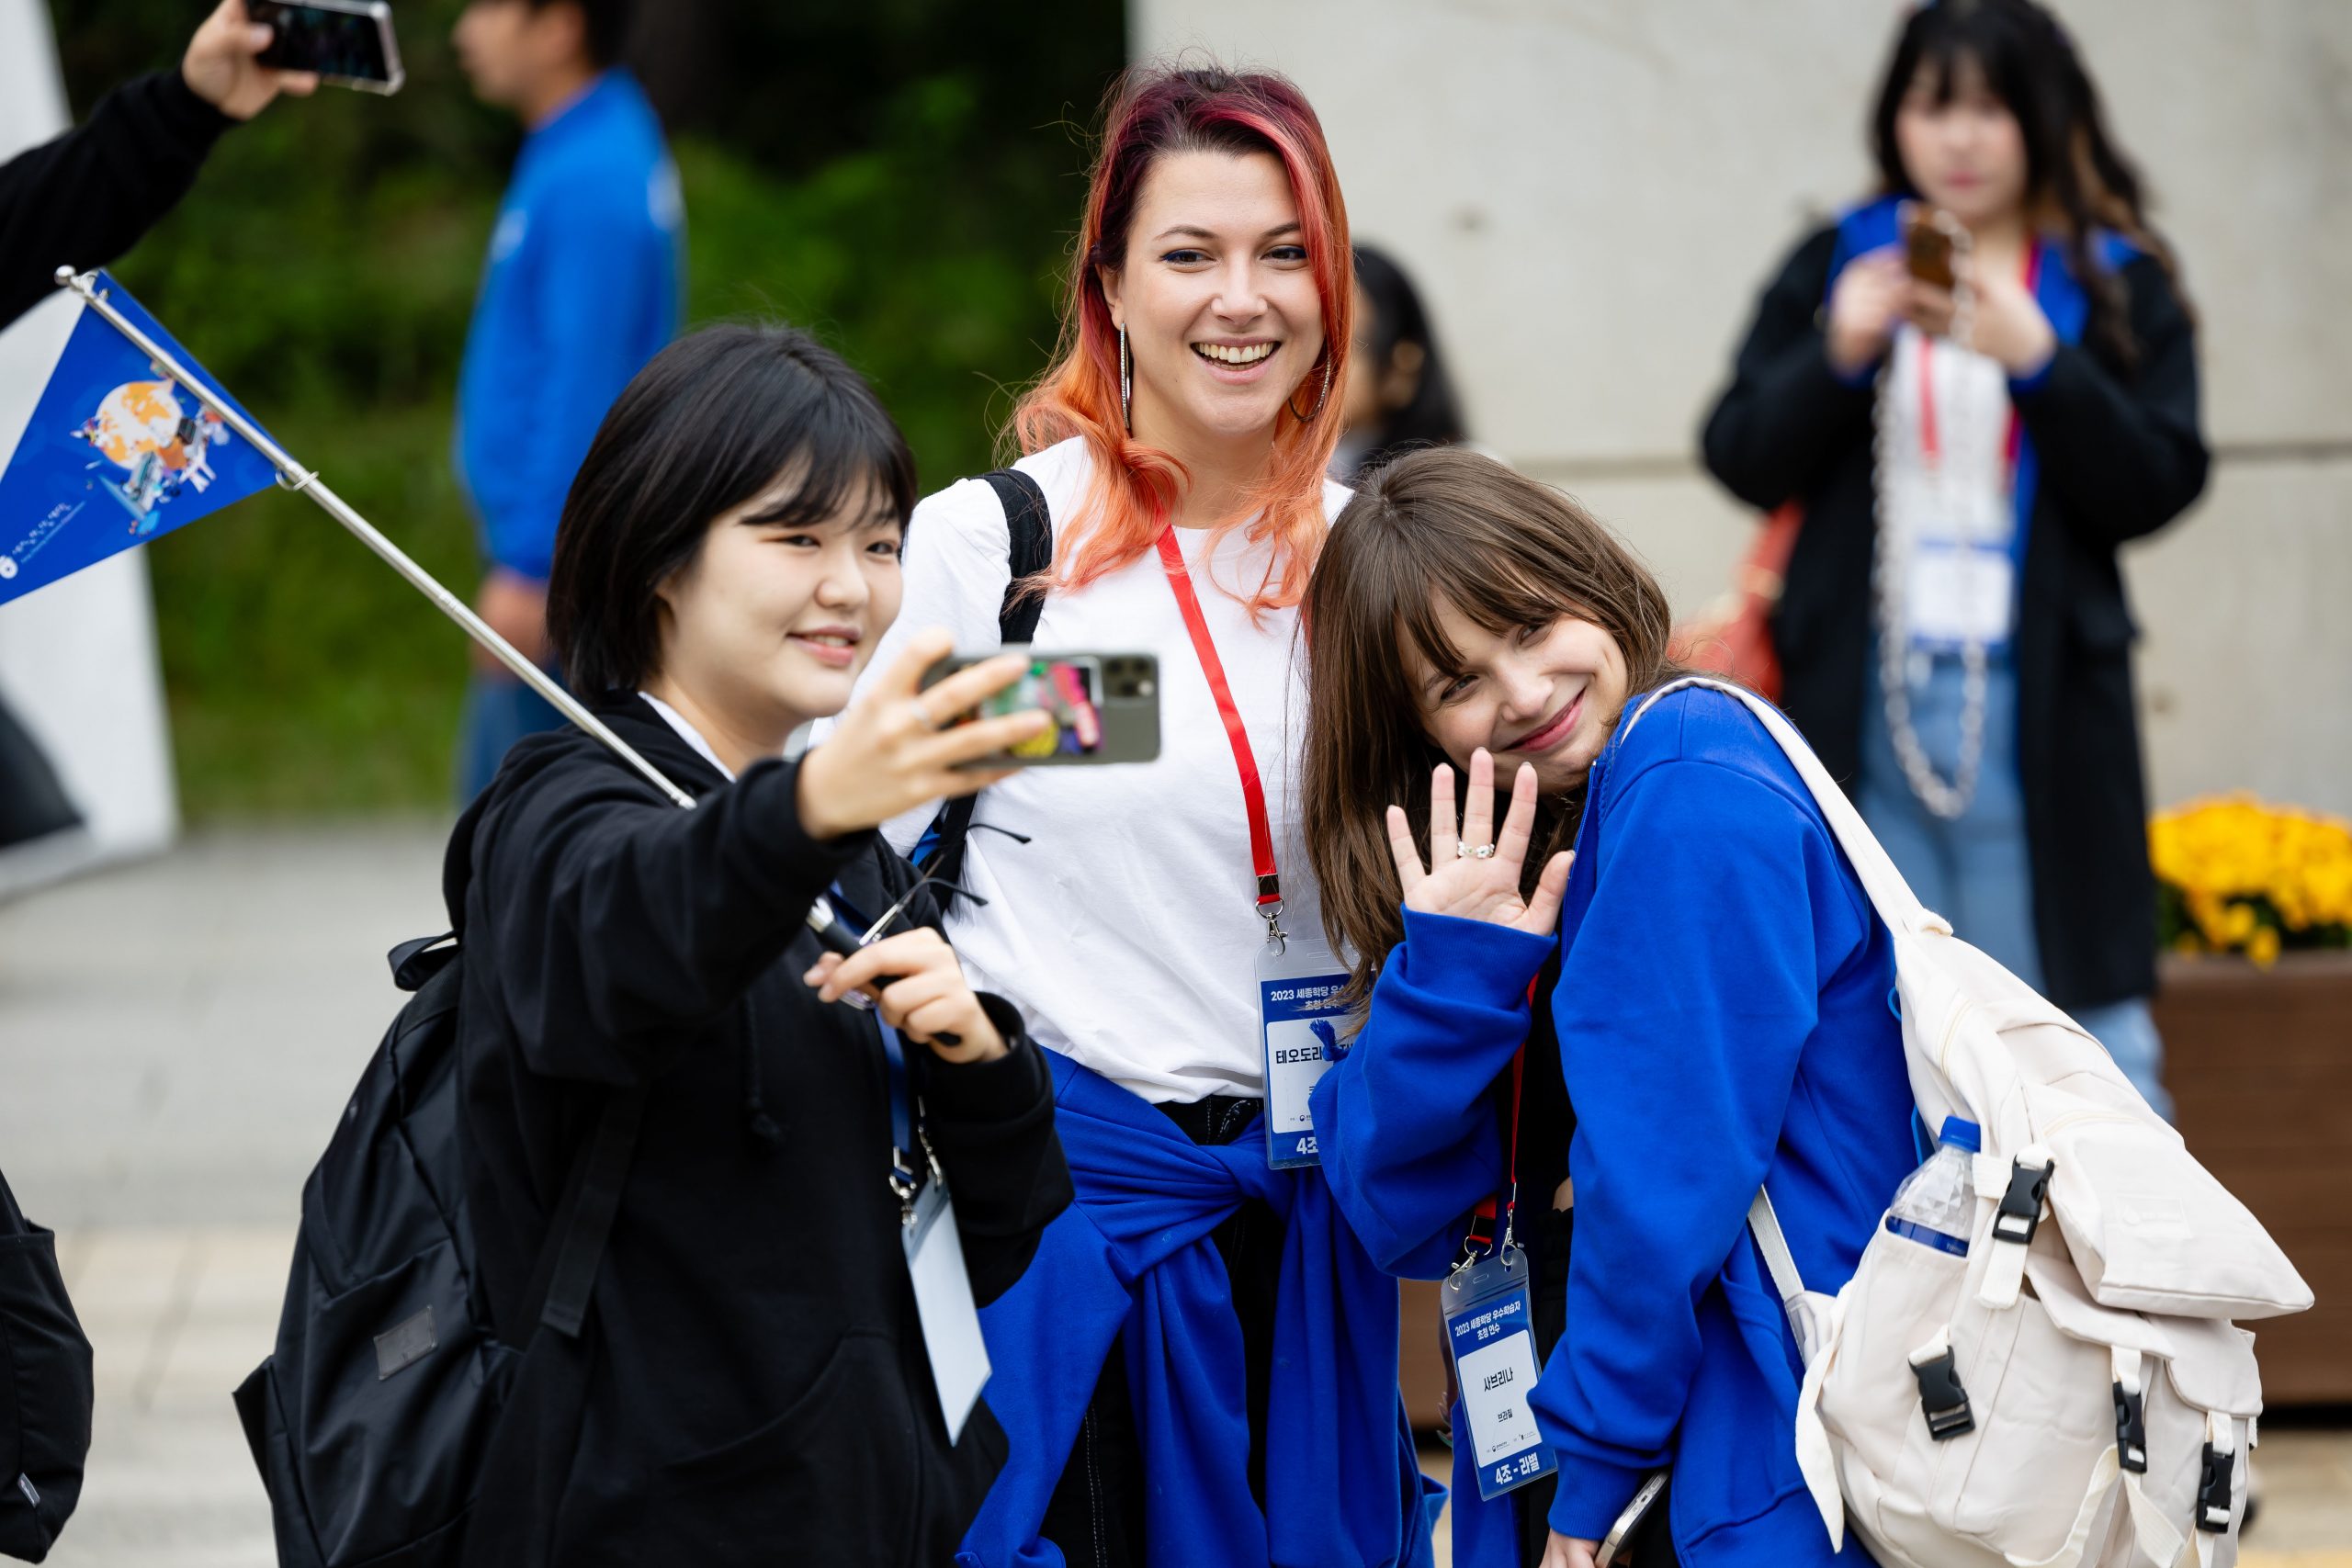 Três mulheres jovens tinham uma selfie. Uma delas segura a bandeira da Coreia.